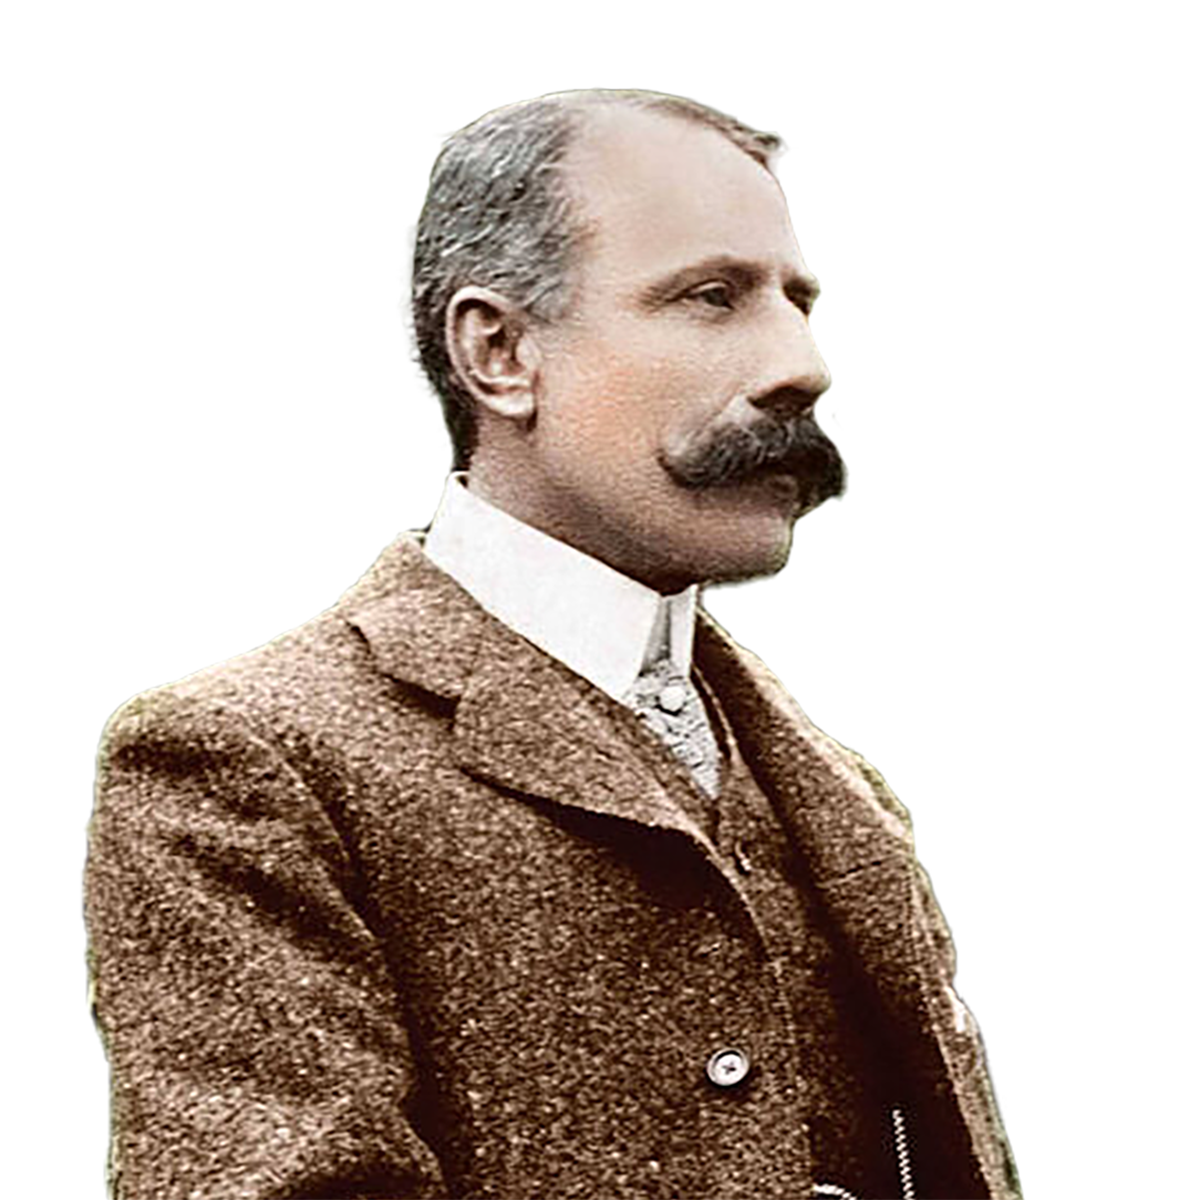 Photograph of composer Edward Elgar